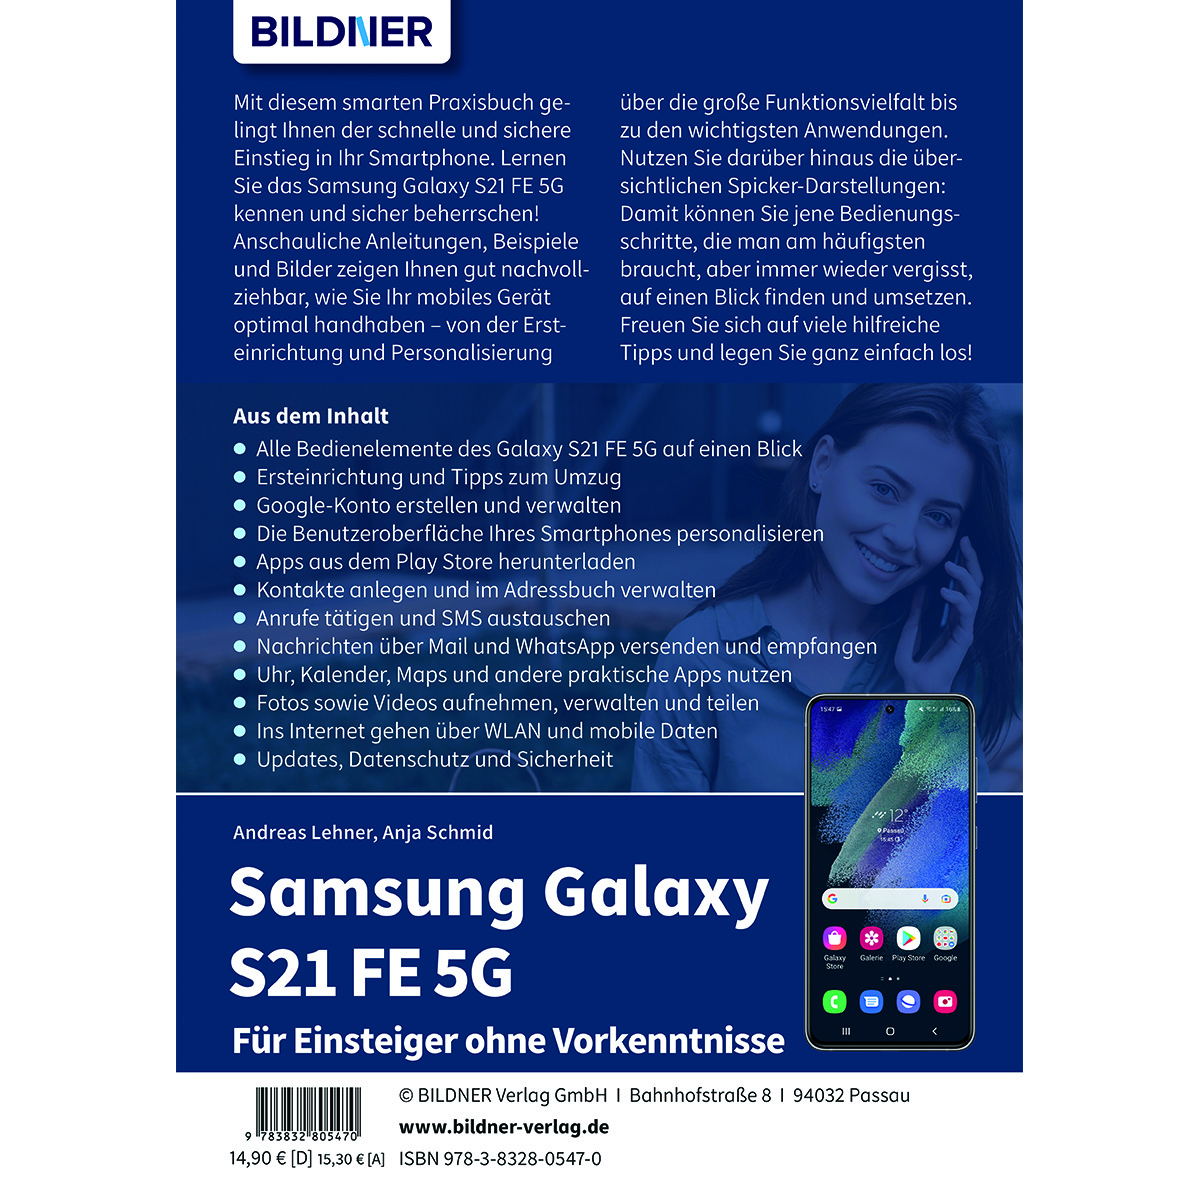 Samsung Galaxy S21 FE - Vorkenntnisse ohne Einsteiger Für